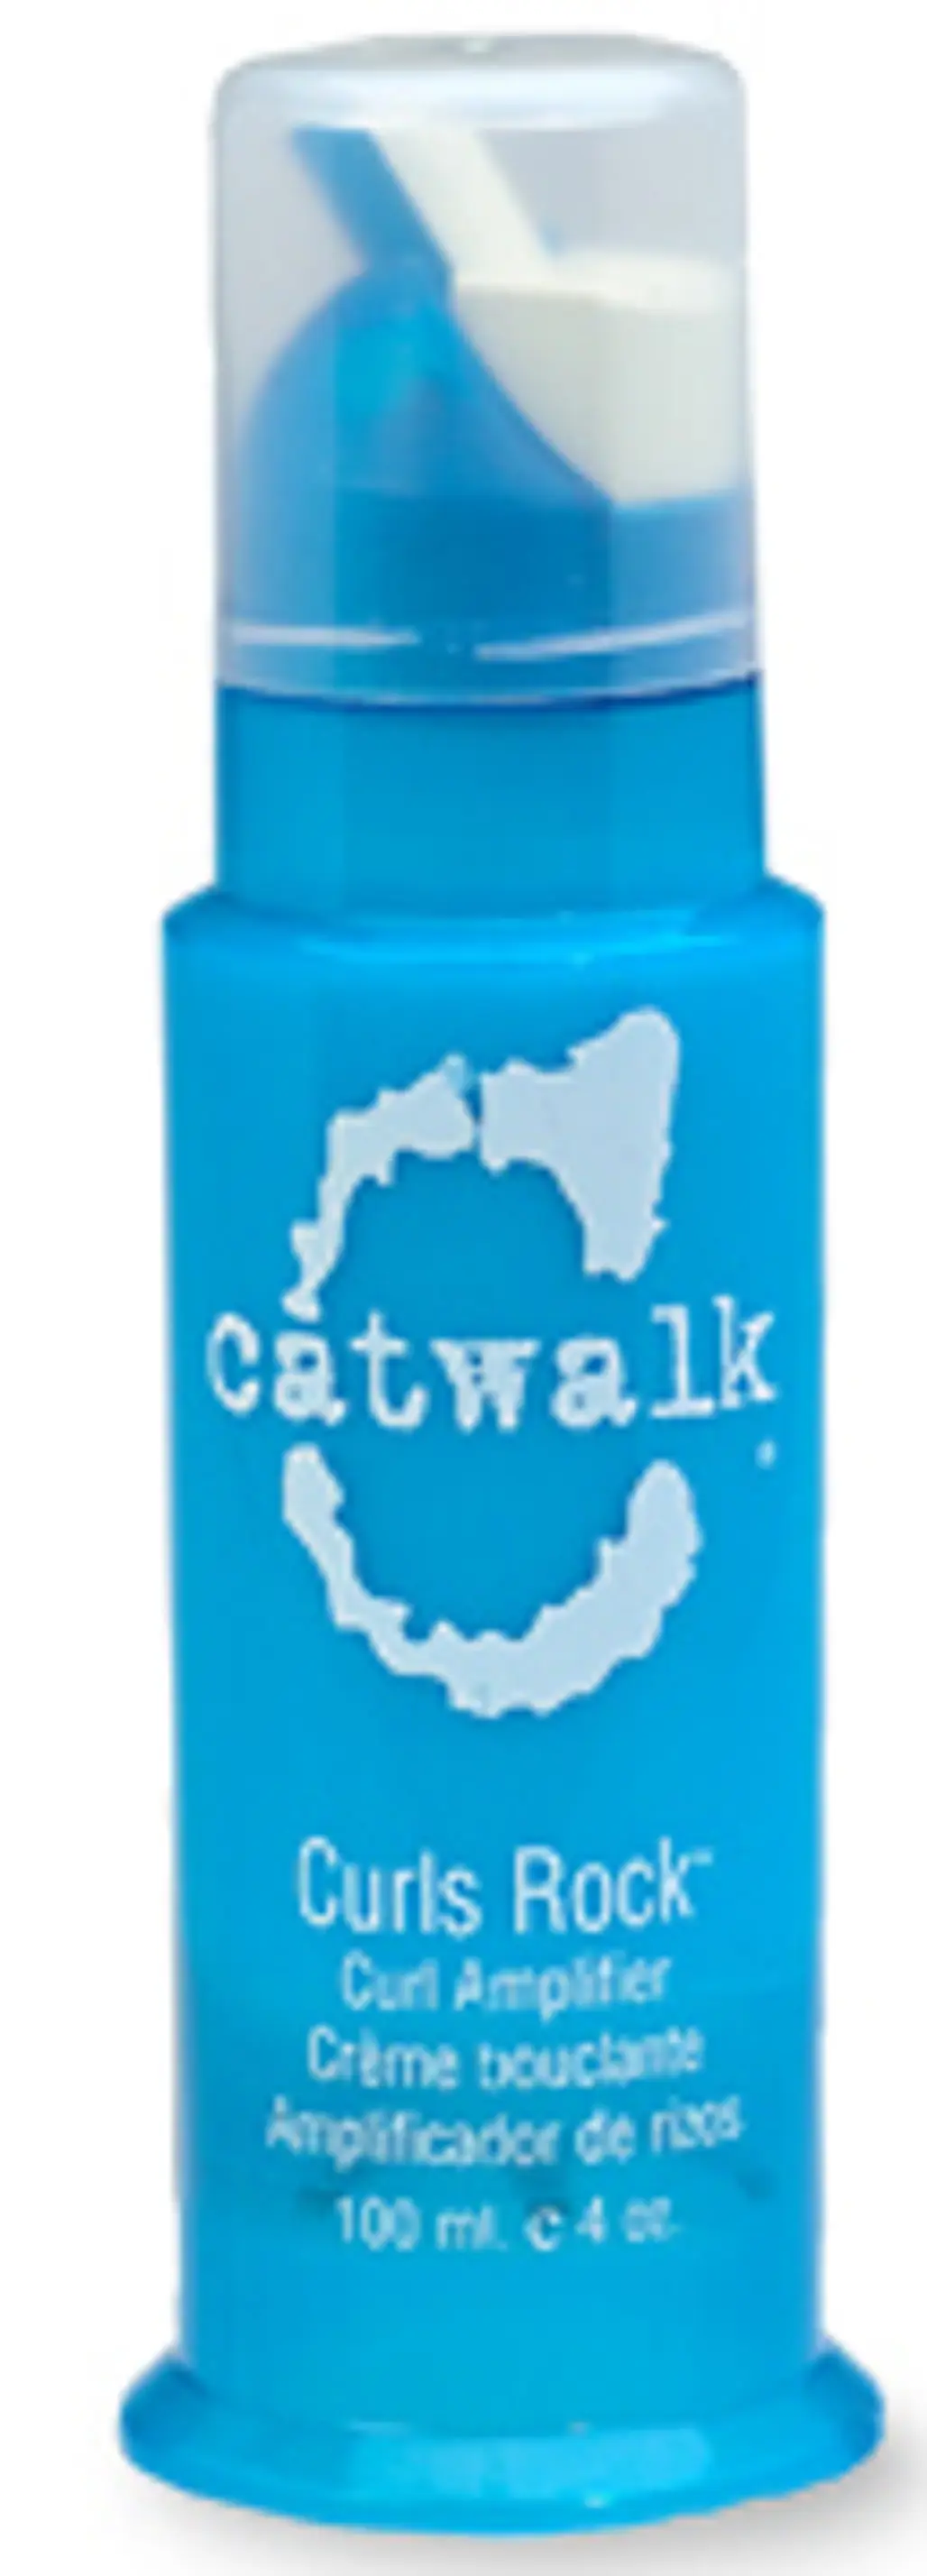 CATWALK by Tigi Curls Rock Amplifier